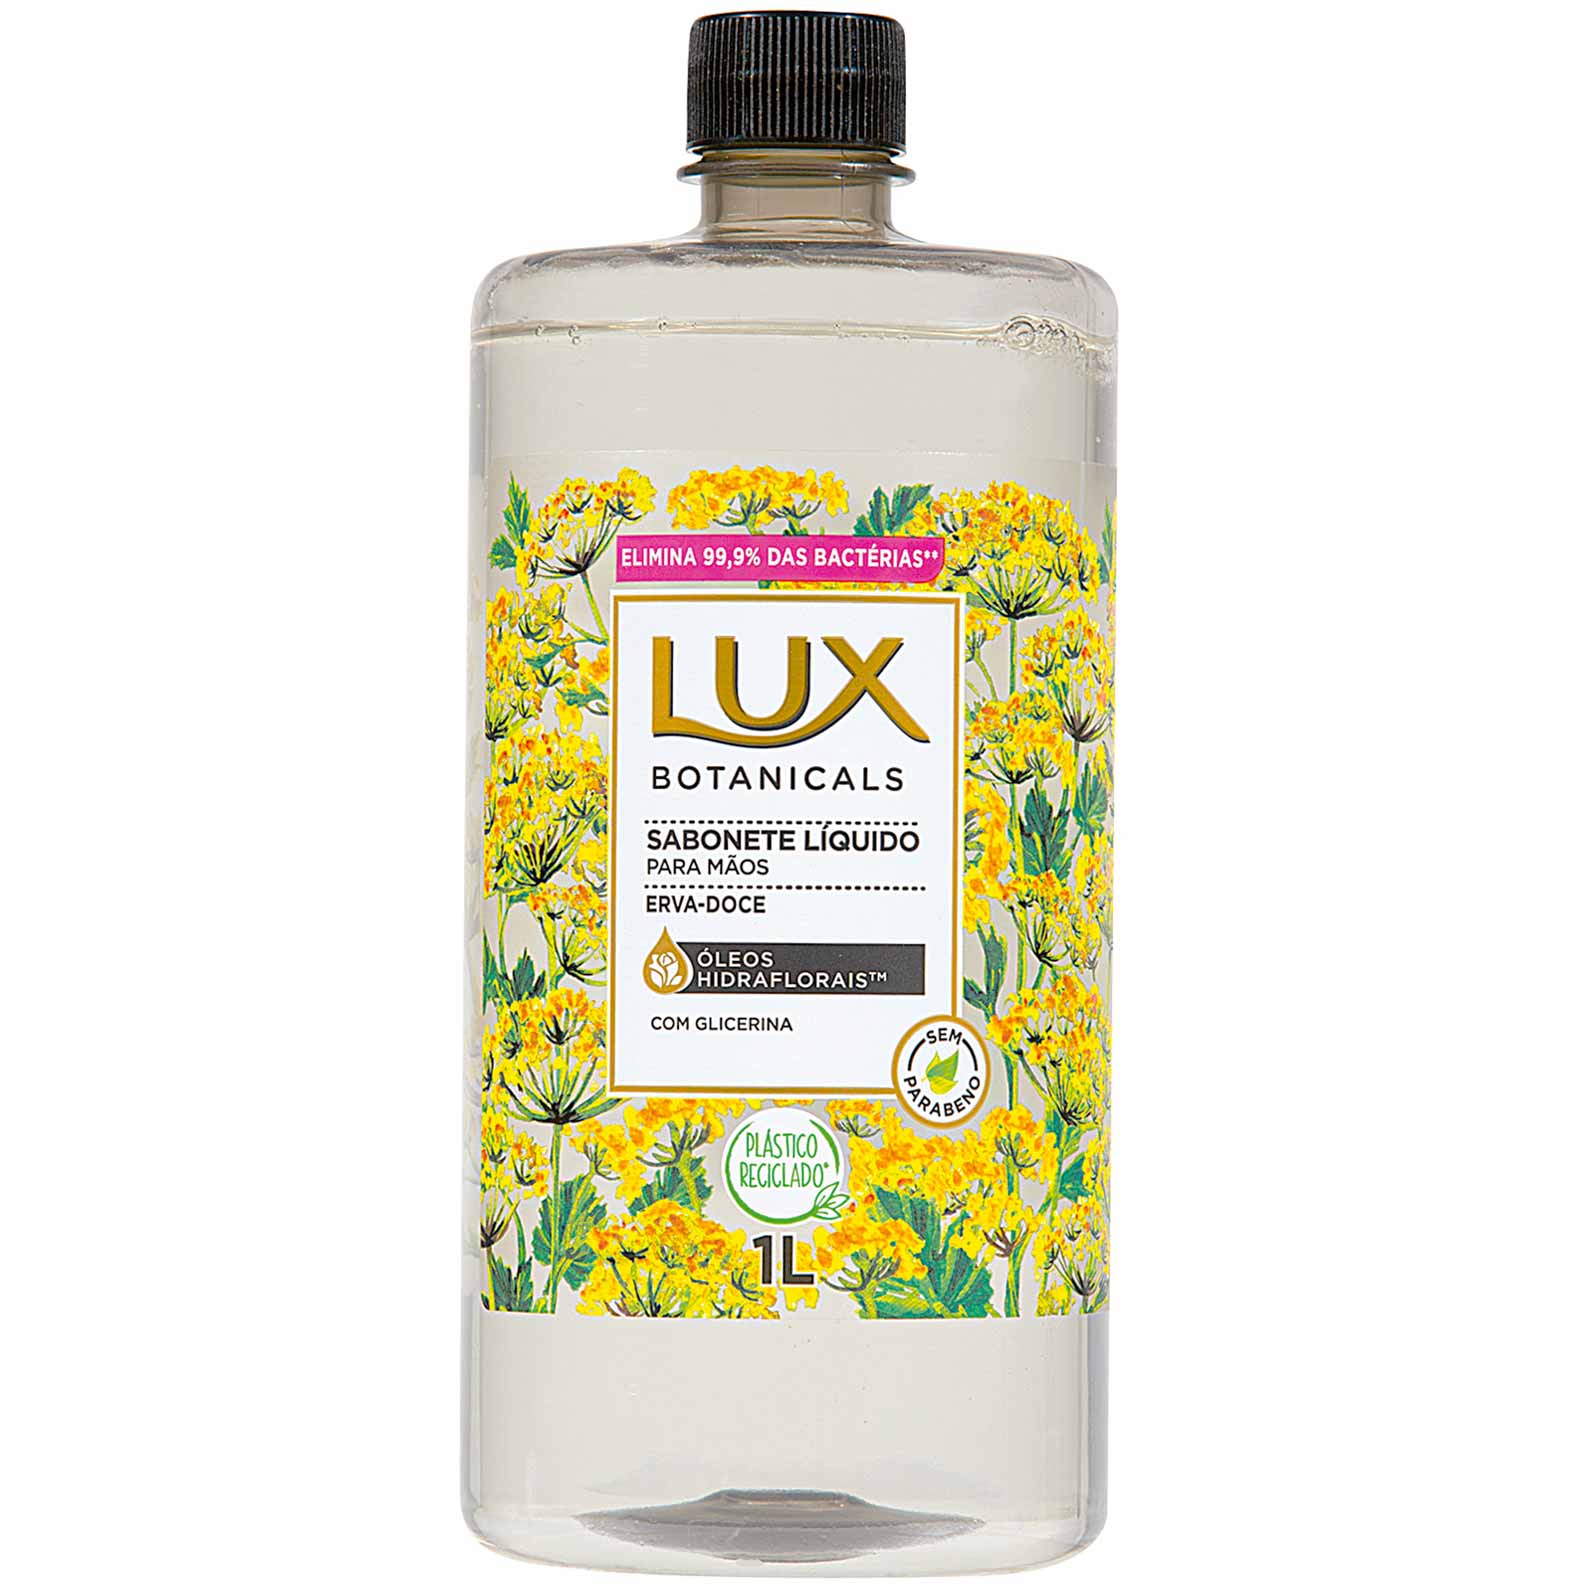 Sabonete Líquido Lux Botanicals Erva Doce 1 Litro - Zaffari & Bourbon